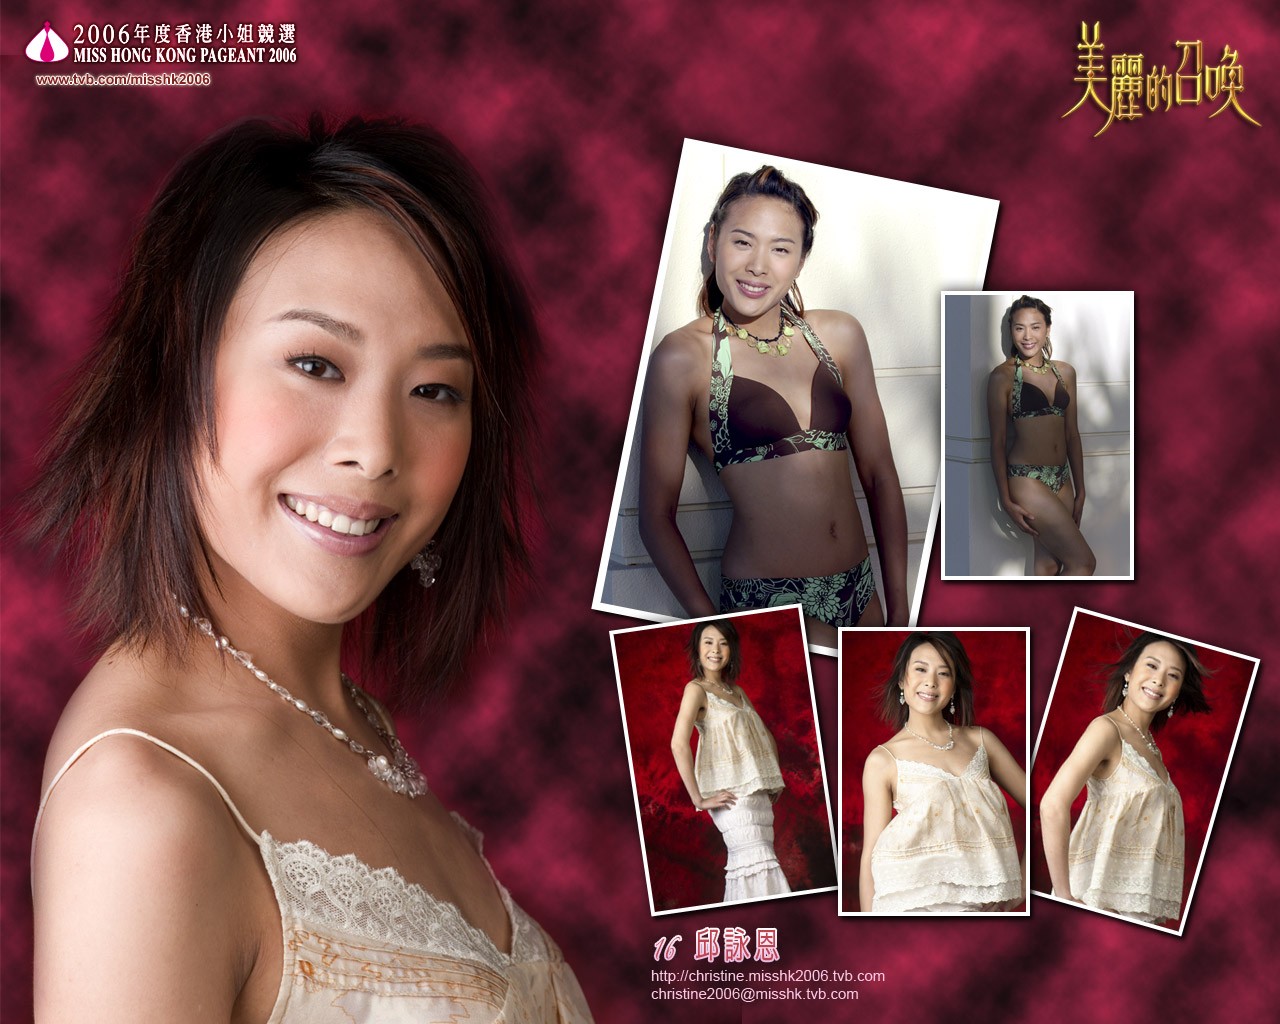 Miss Hong Kong 2006 Album #1 - 1280x1024